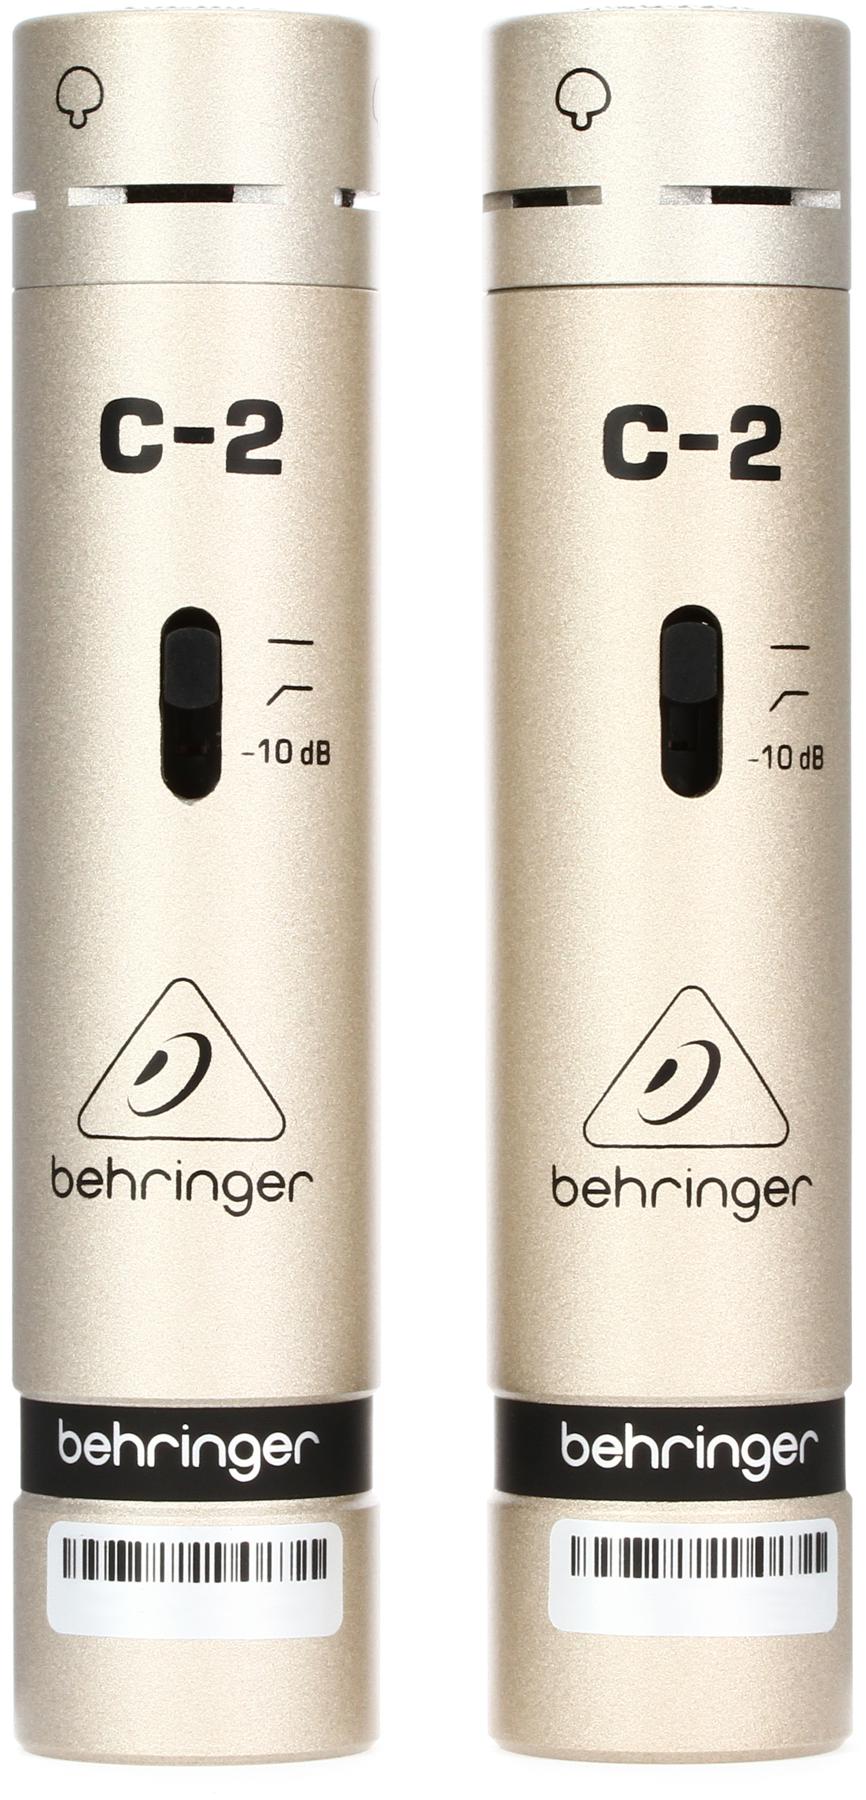 4. Behringer C2 Condenser Microphones